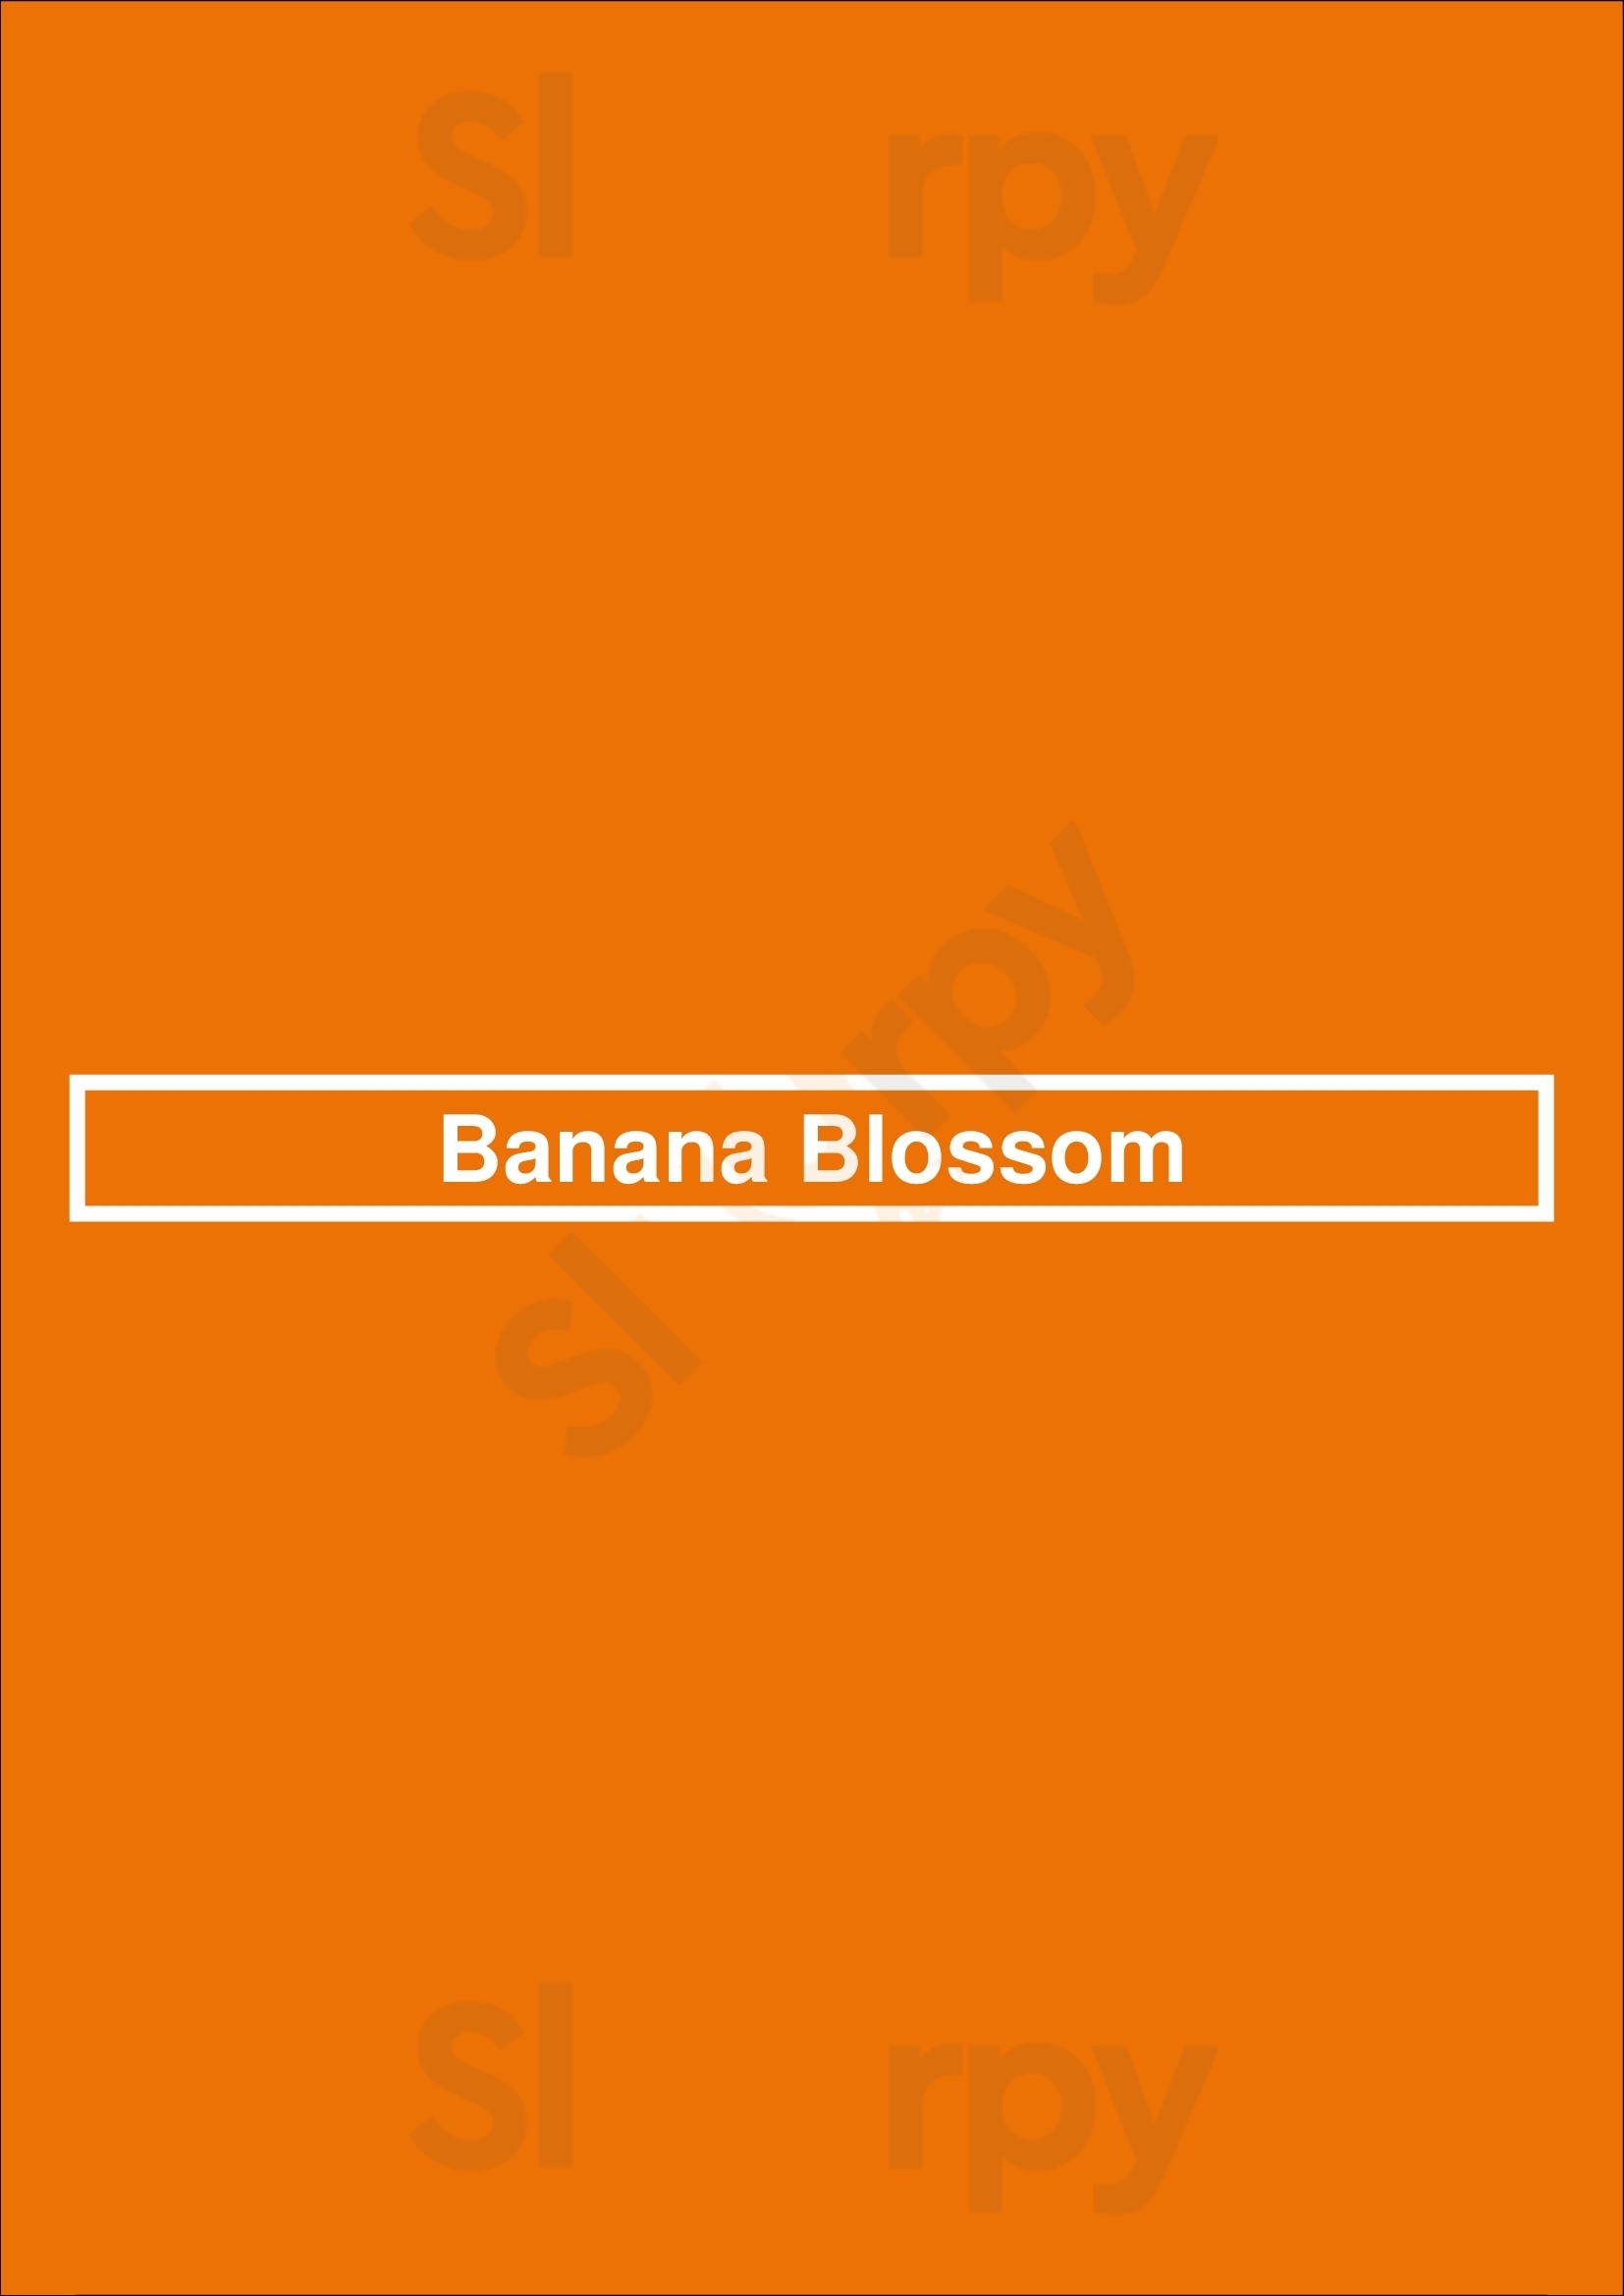 Banana Blossom Oakland Menu - 1